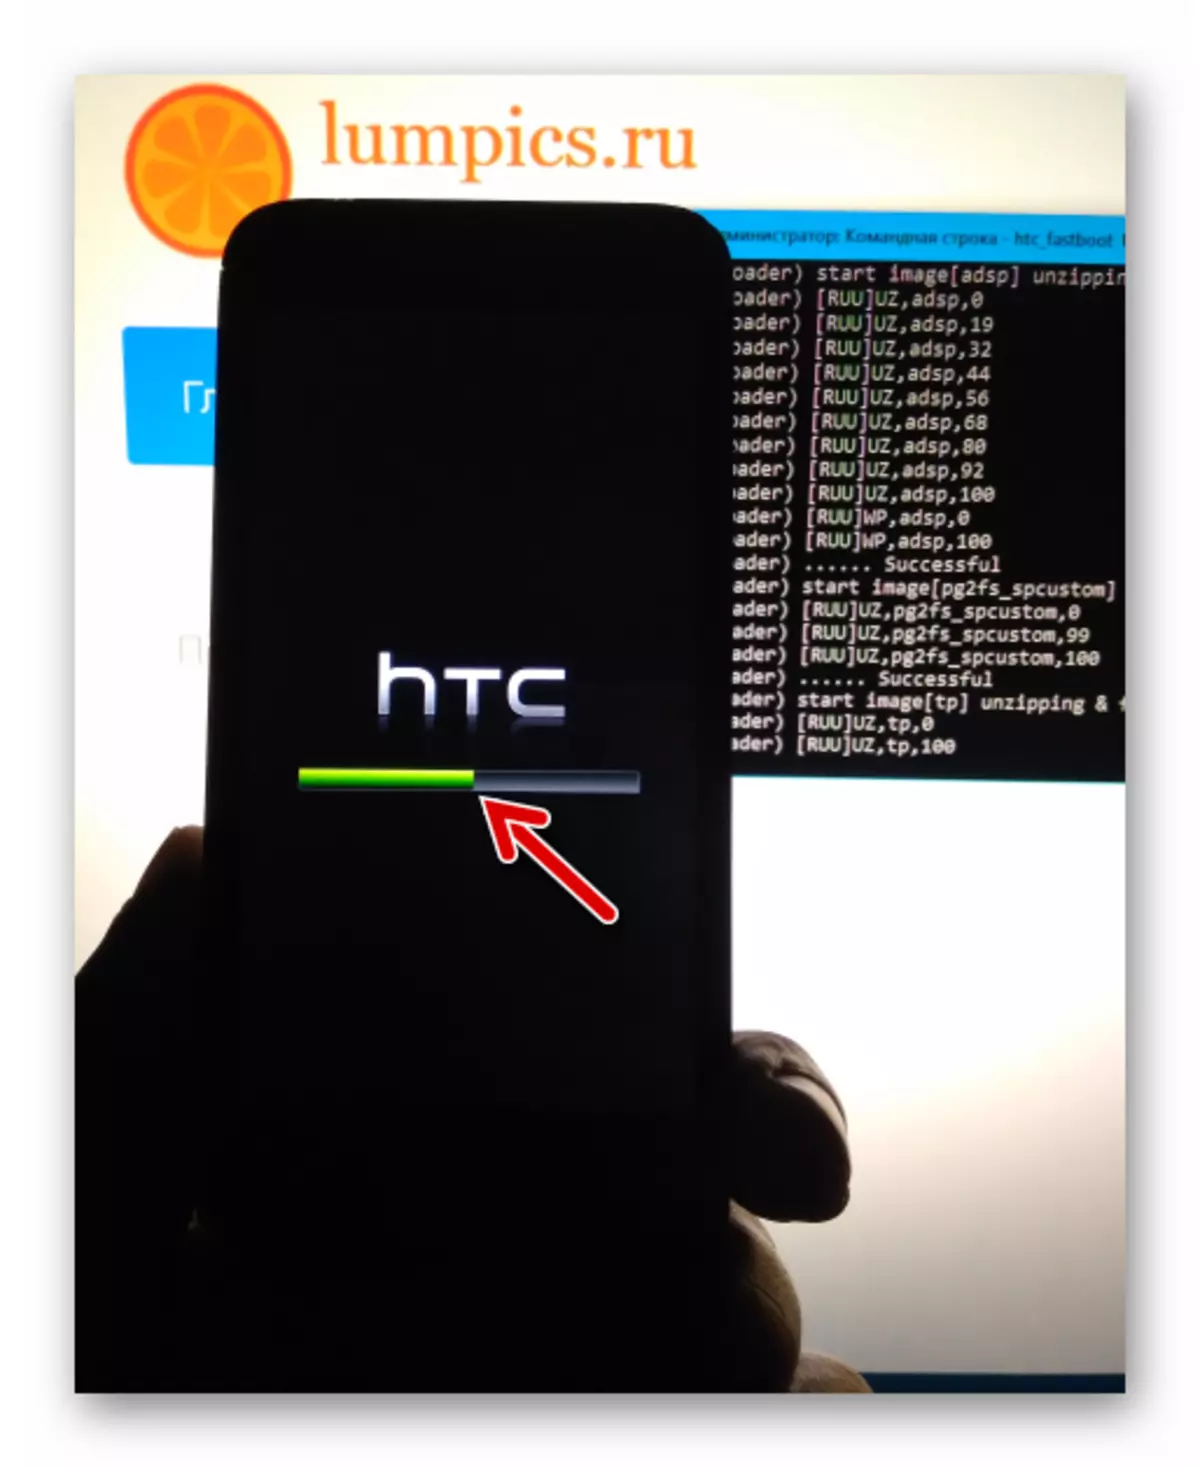 Chỉ báo thực thi HTC Desire 601 trên màn hình thiết bị trong phần sụn thông qua FastBoot